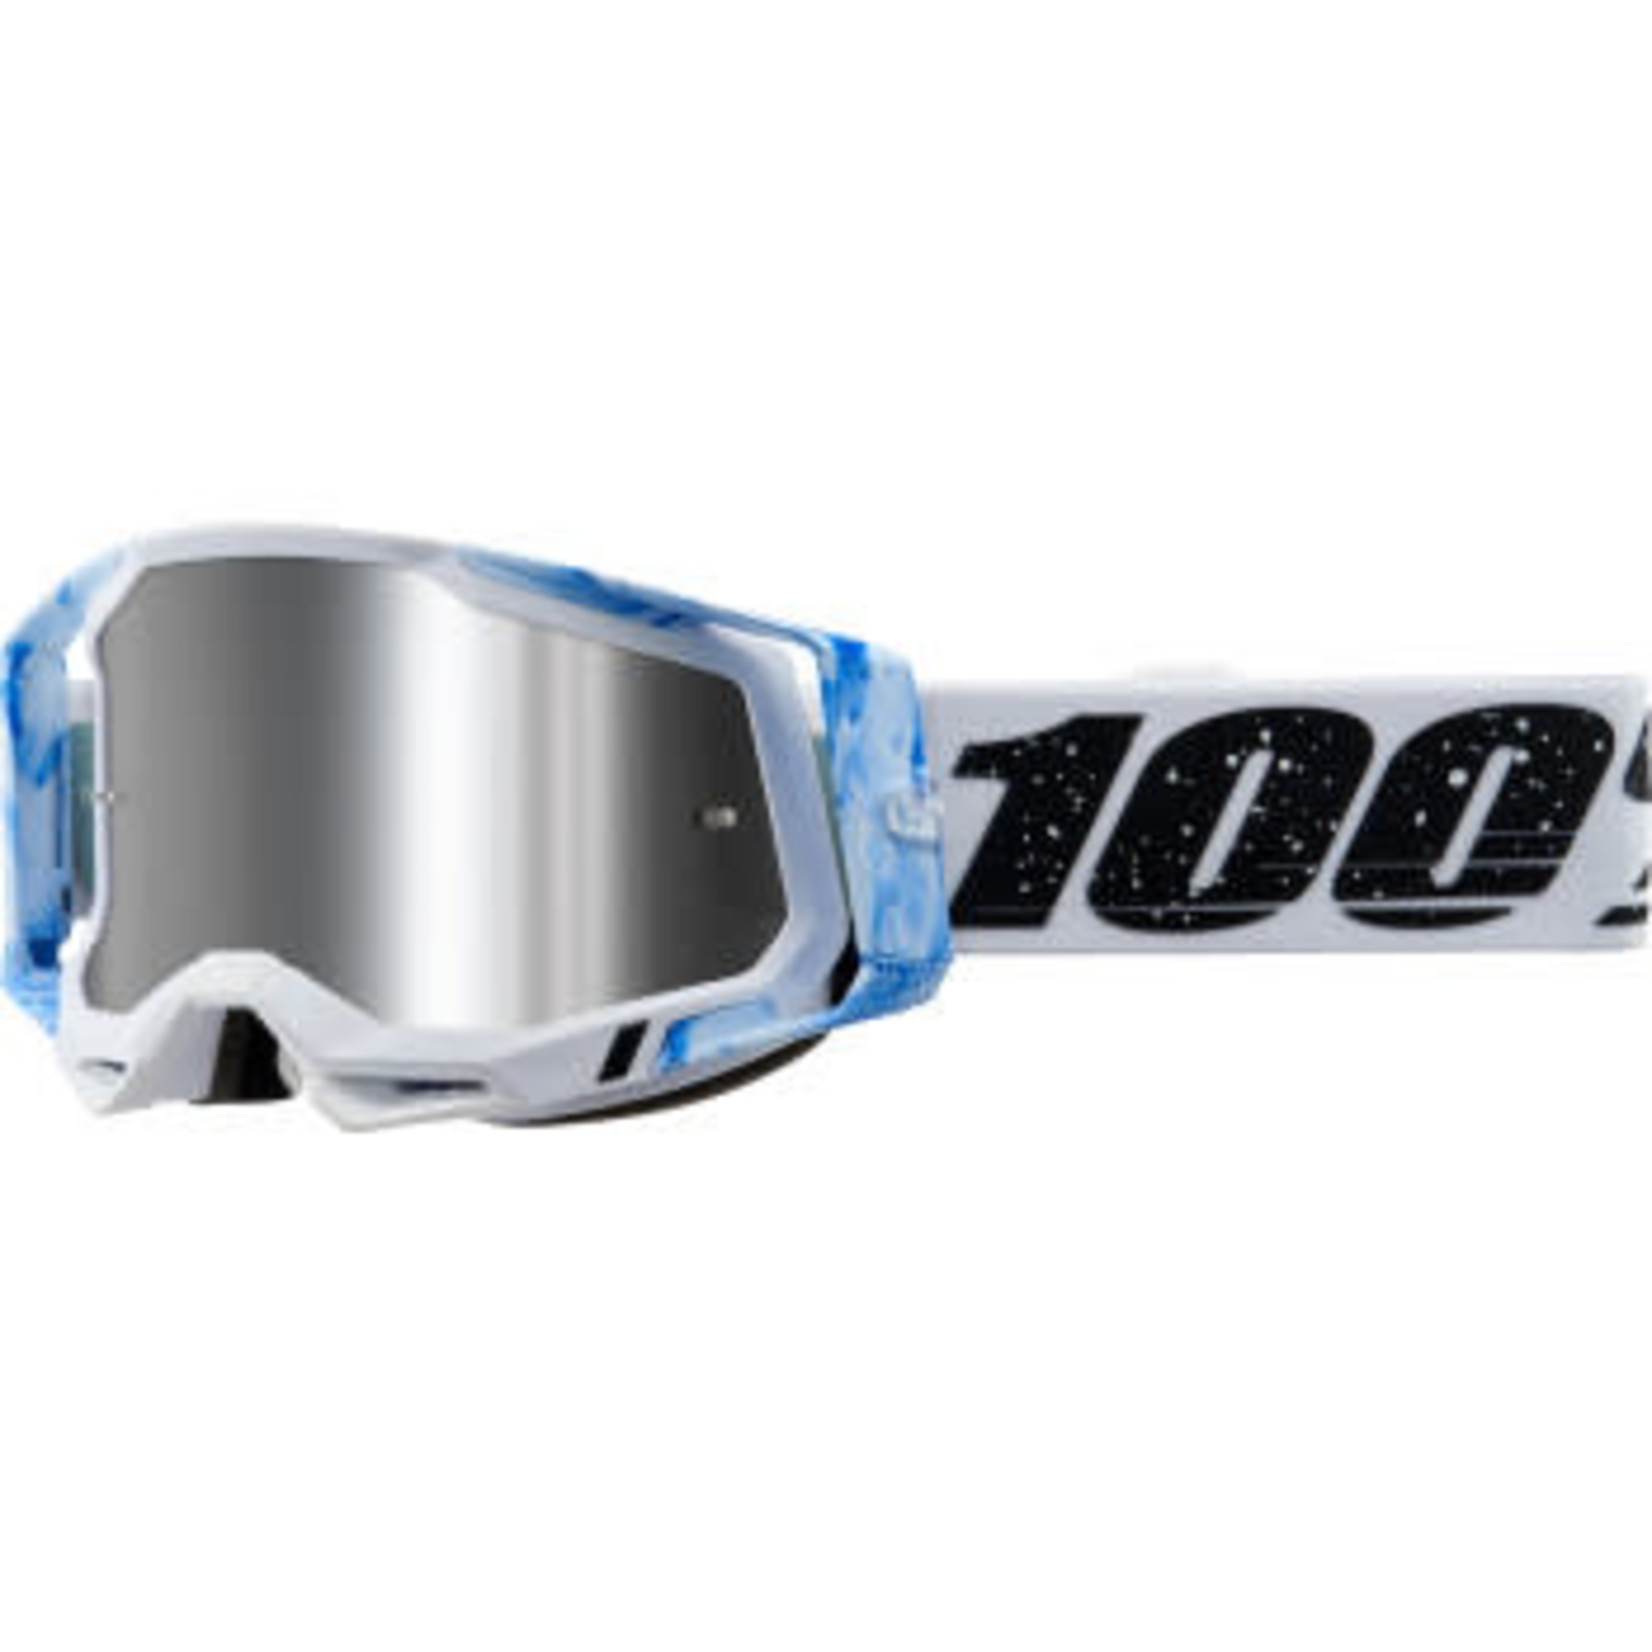 100% RACECRAFT 2 Goggle Mixos-Mirror Silver Flash Lens